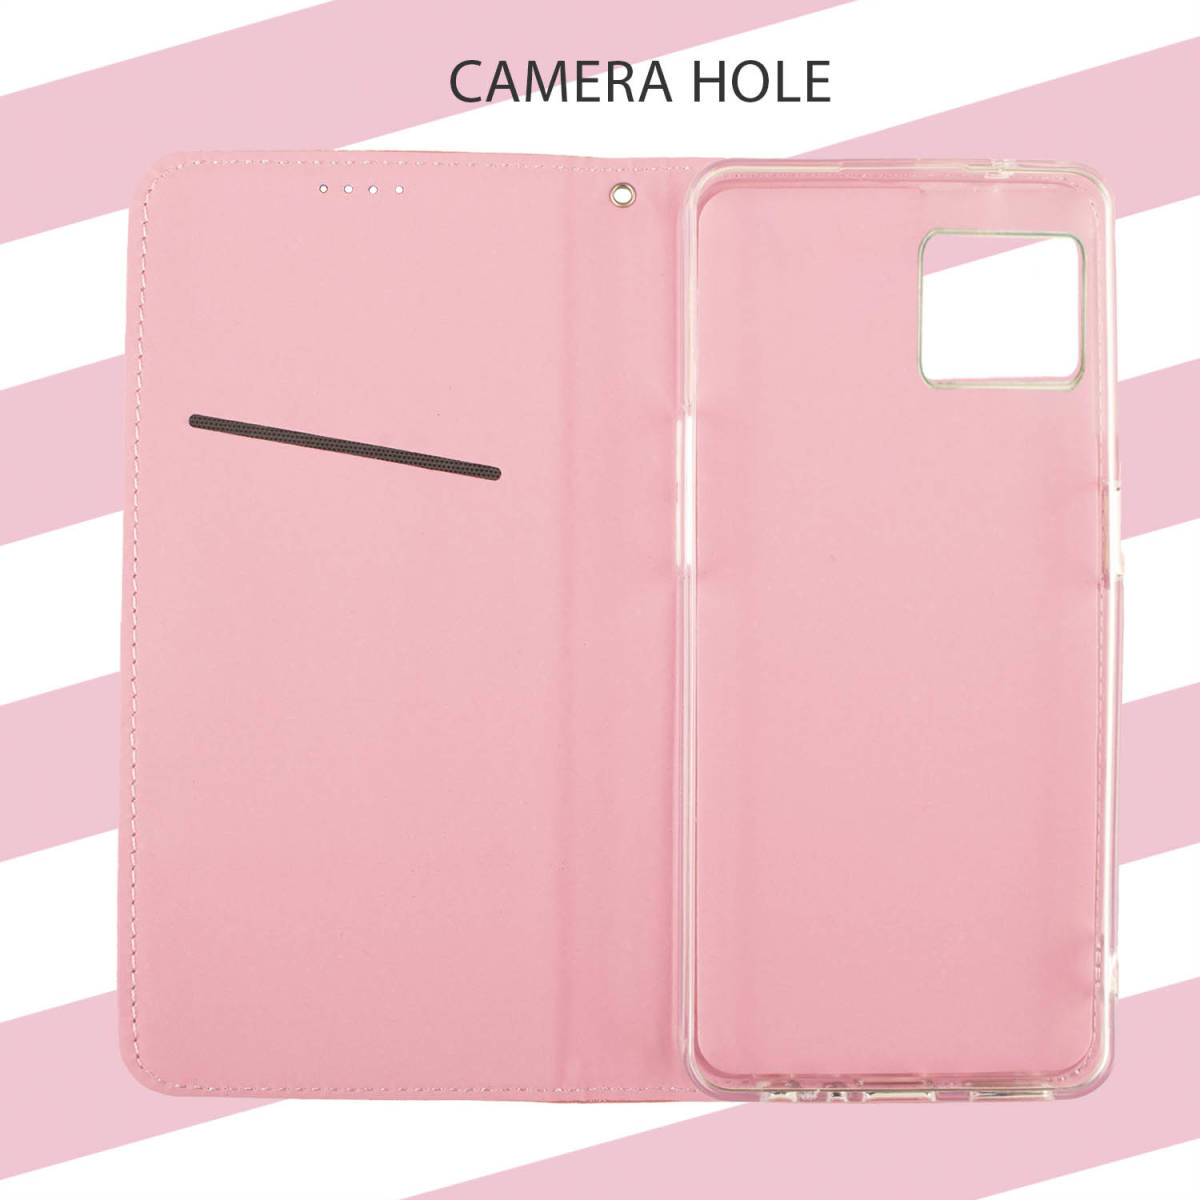 iPhone12 ケース 手帳型 可愛い おしゃれ ピンク 桃 pink iPhone 12 カバー スマホケース シンプル アイフォン12 アイフォーン12 送料無料_画像5